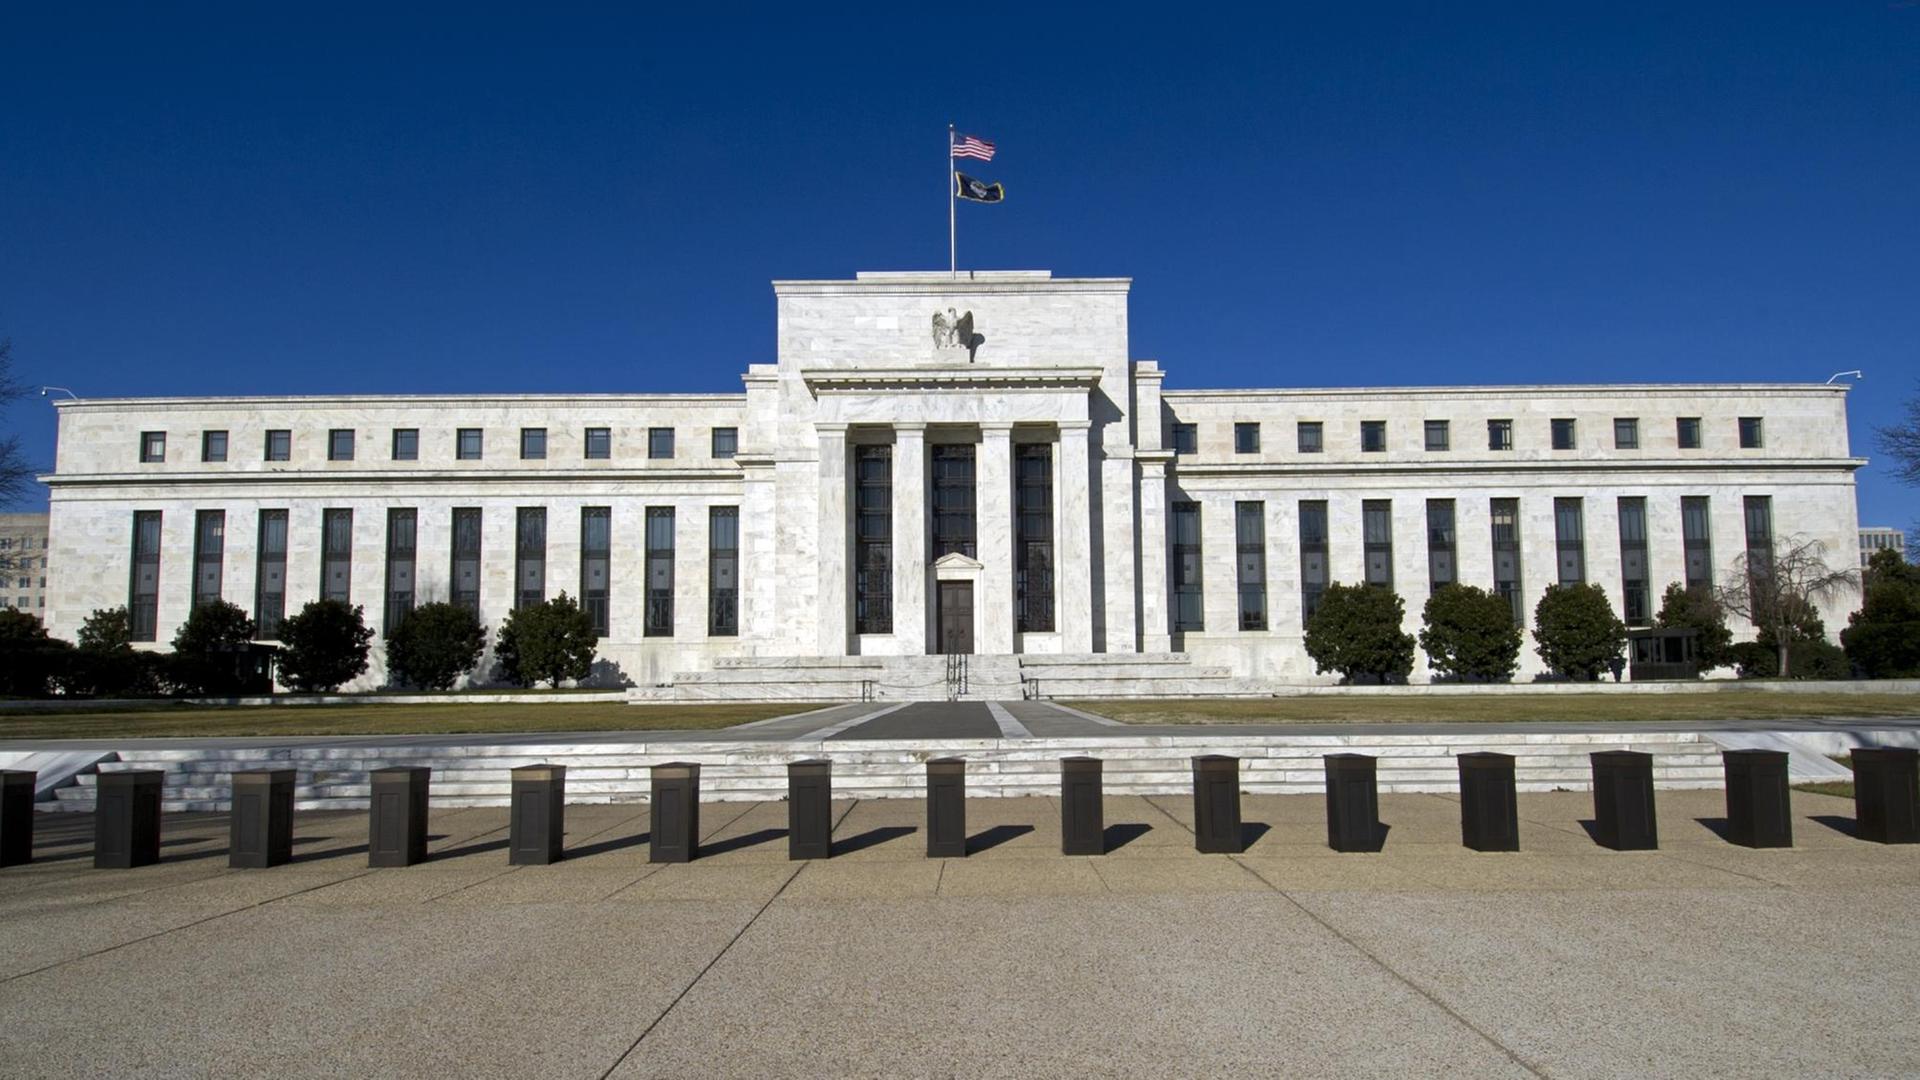 Das Federal Reserve Board Building in Washington. Das Gebäude der US-Notenbank, in dem die Gouverneure der Bank zusammenkommen.